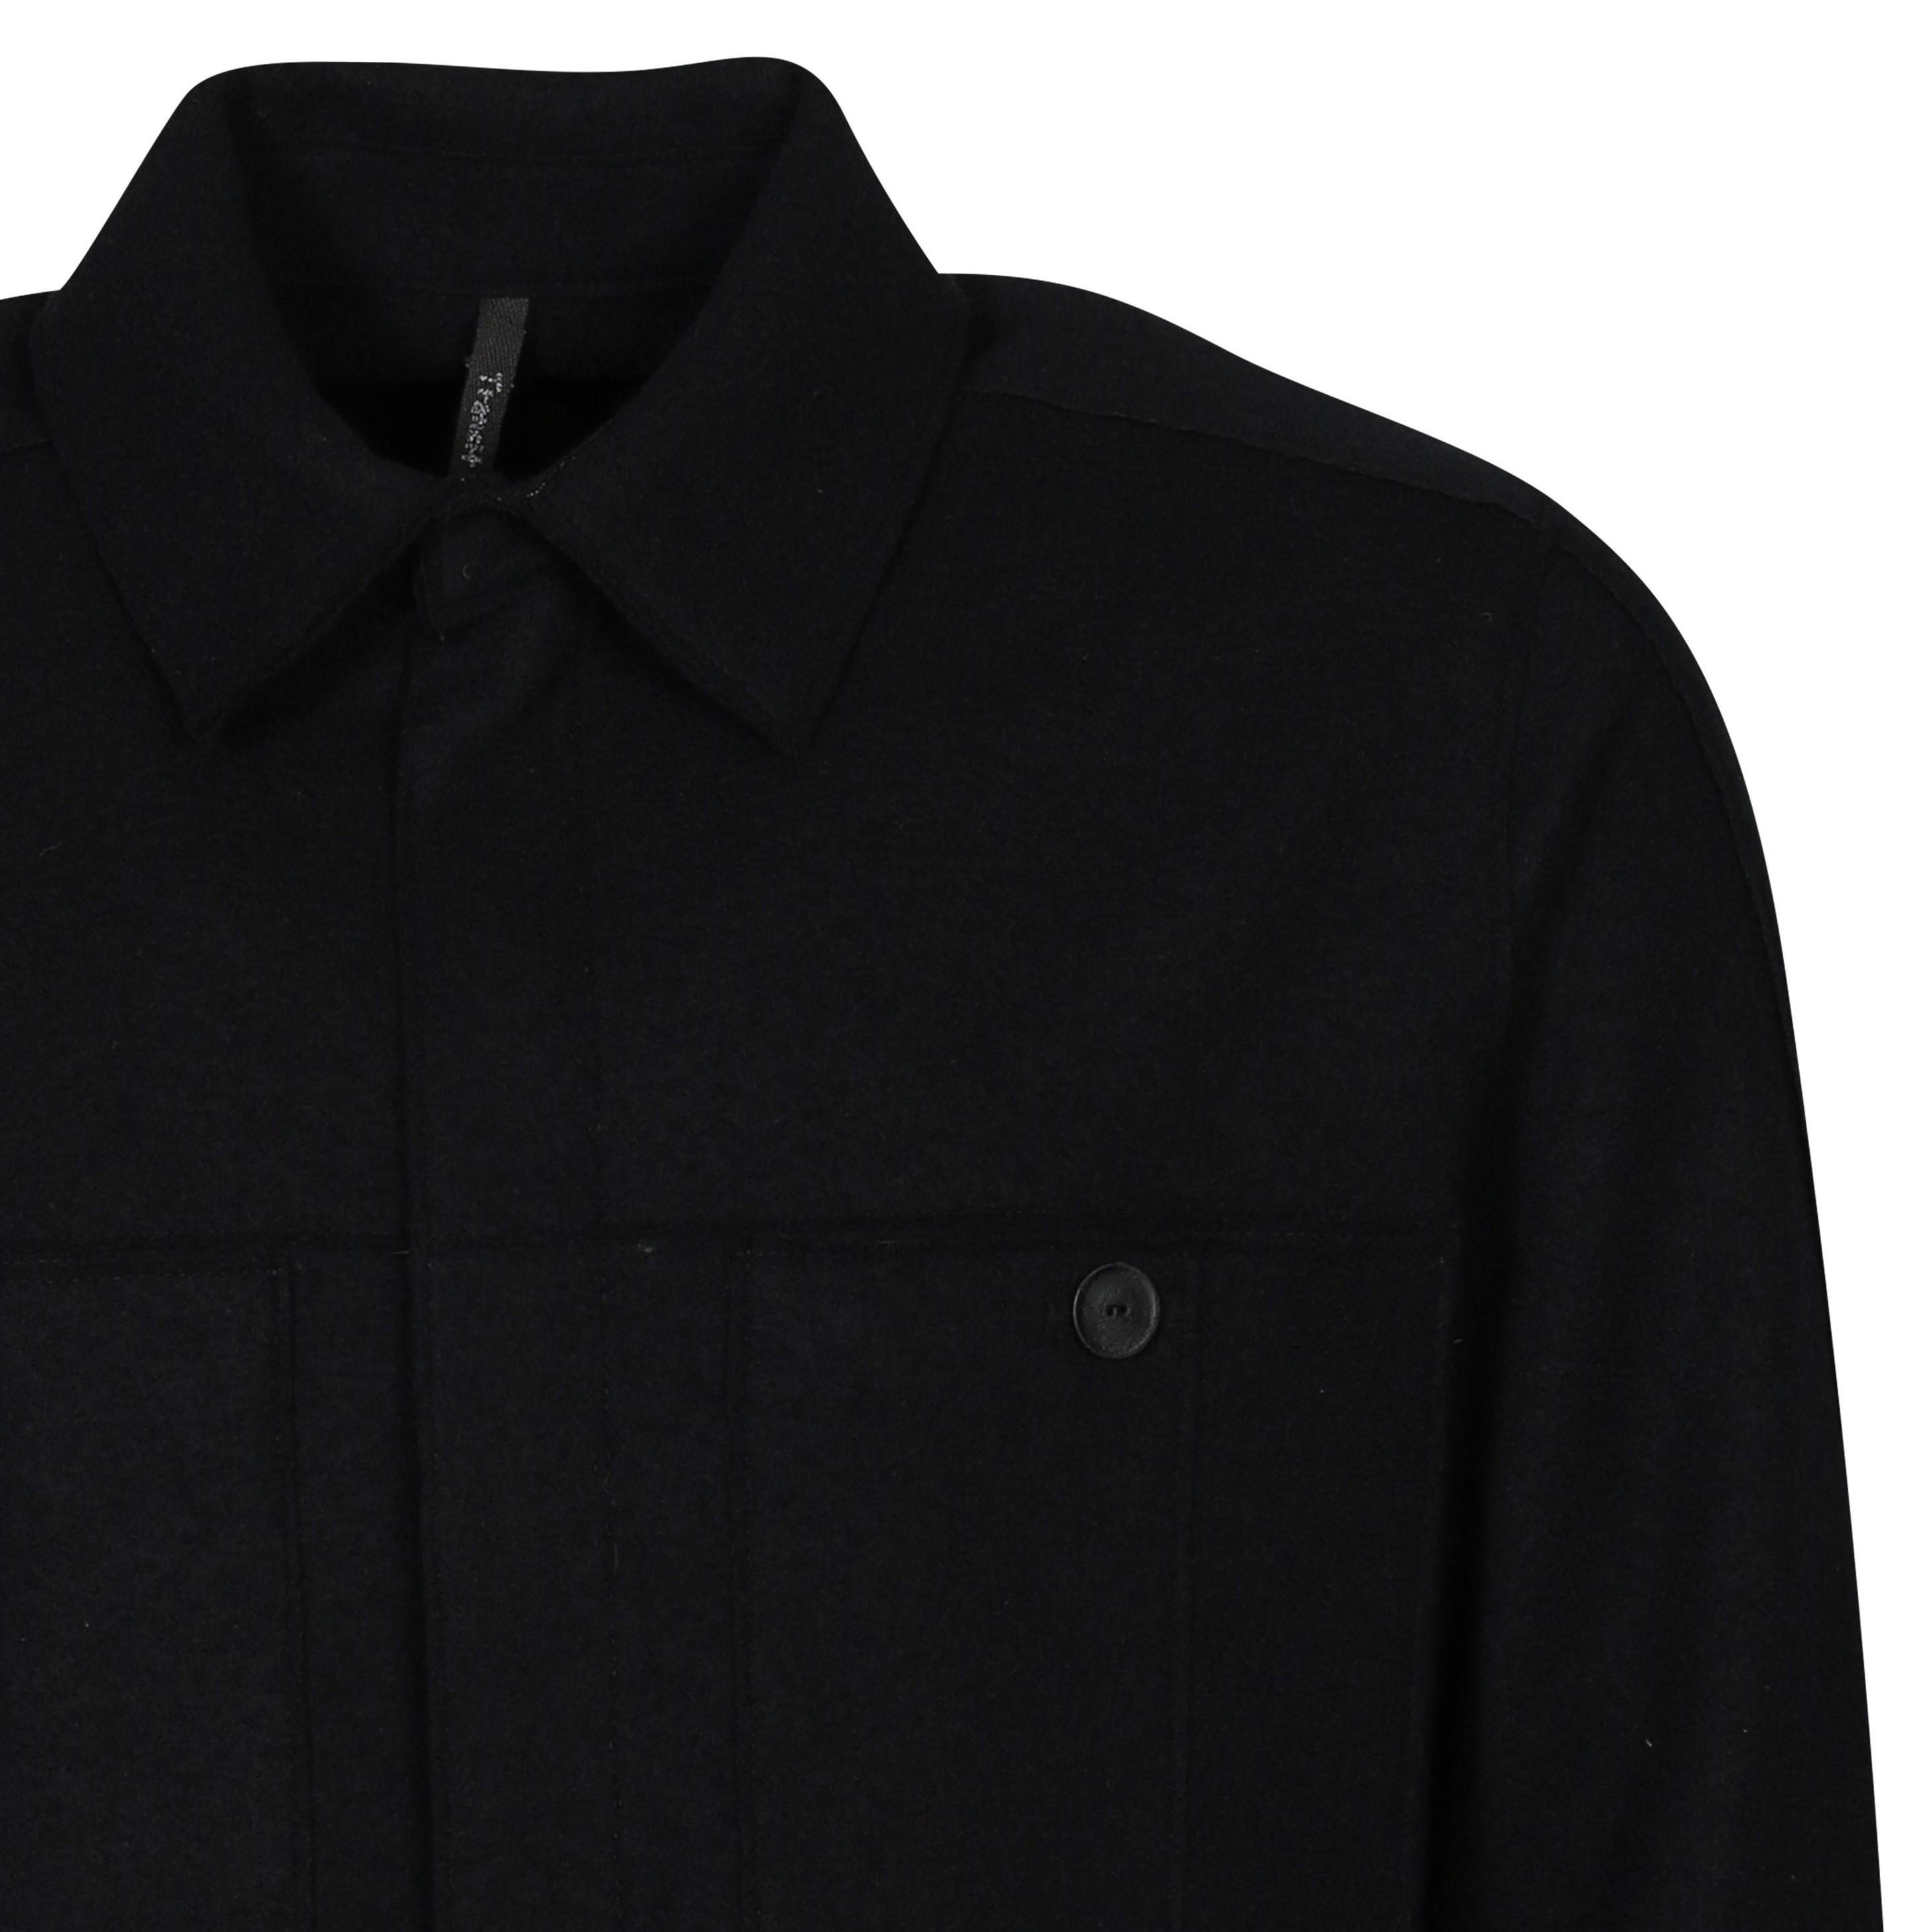 Transit Uomo Wool Overshirt in Black